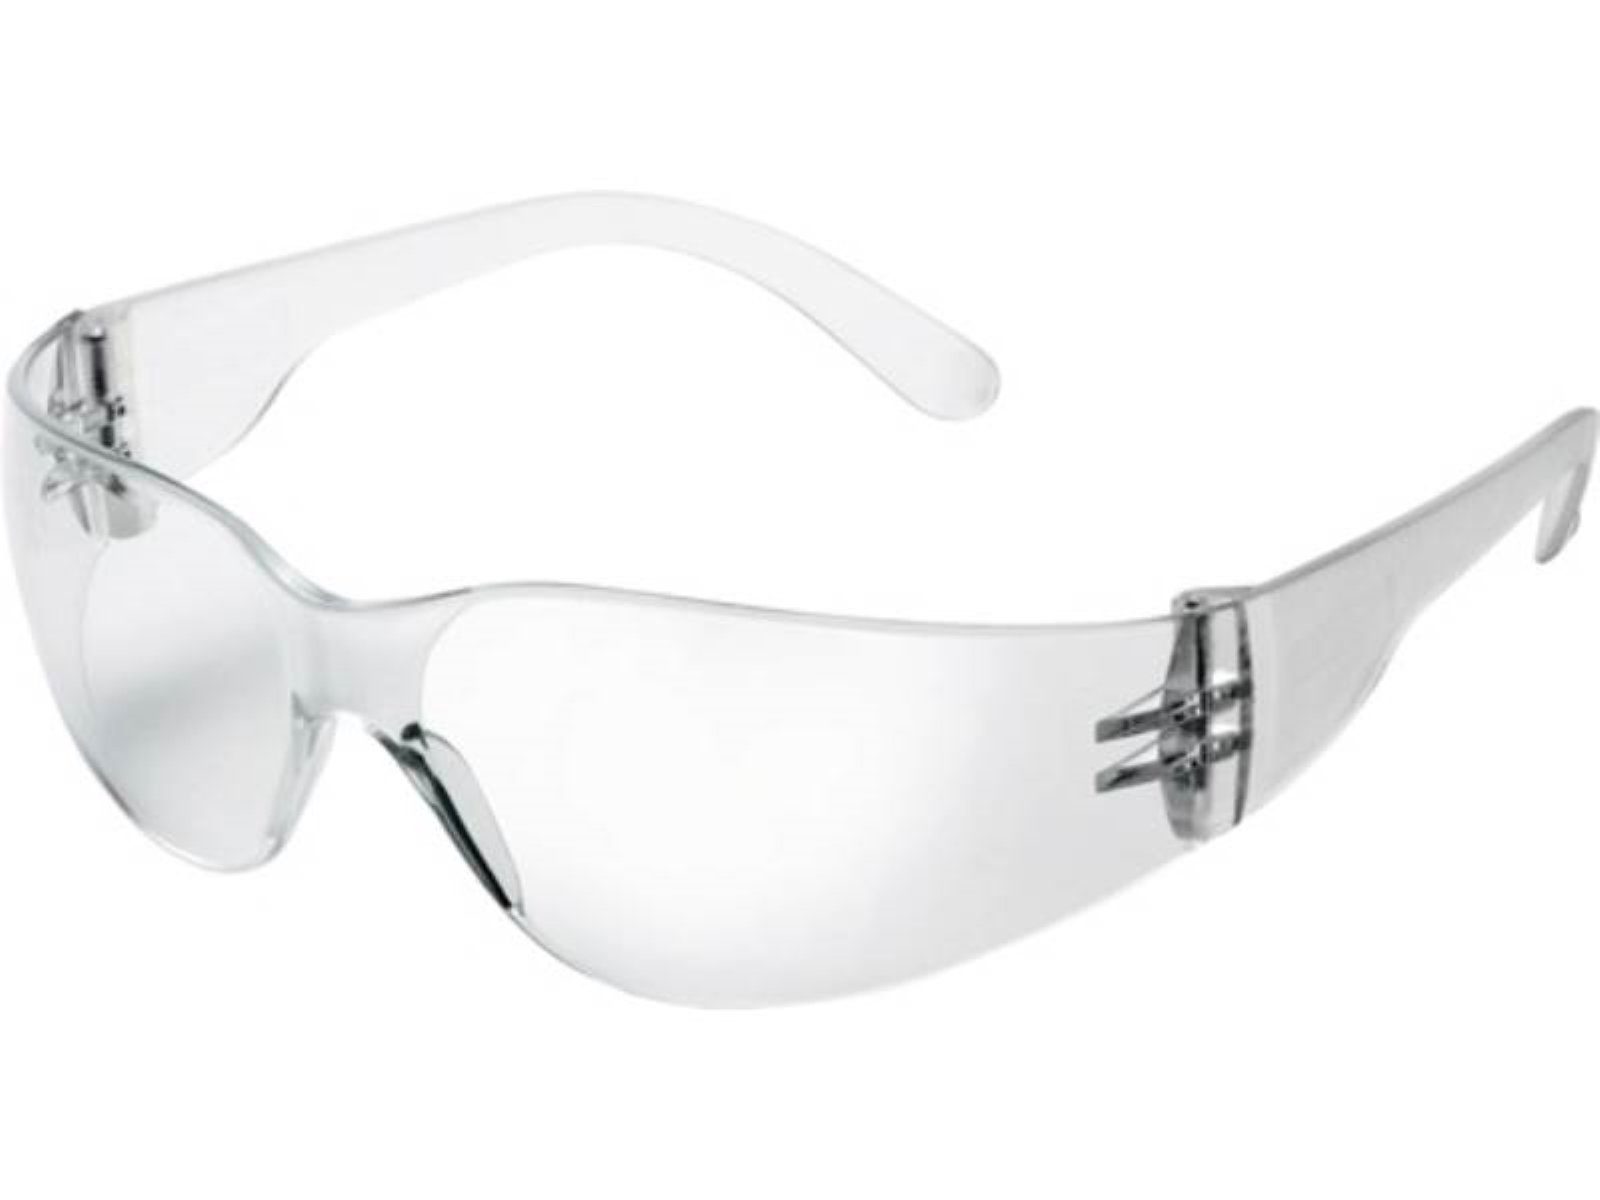 Univet Arbeitsschutzbrille Schutzbrille 568 EN 166,EN 170 Bügel klar,Scheibe klar PC UNIVET EN 1